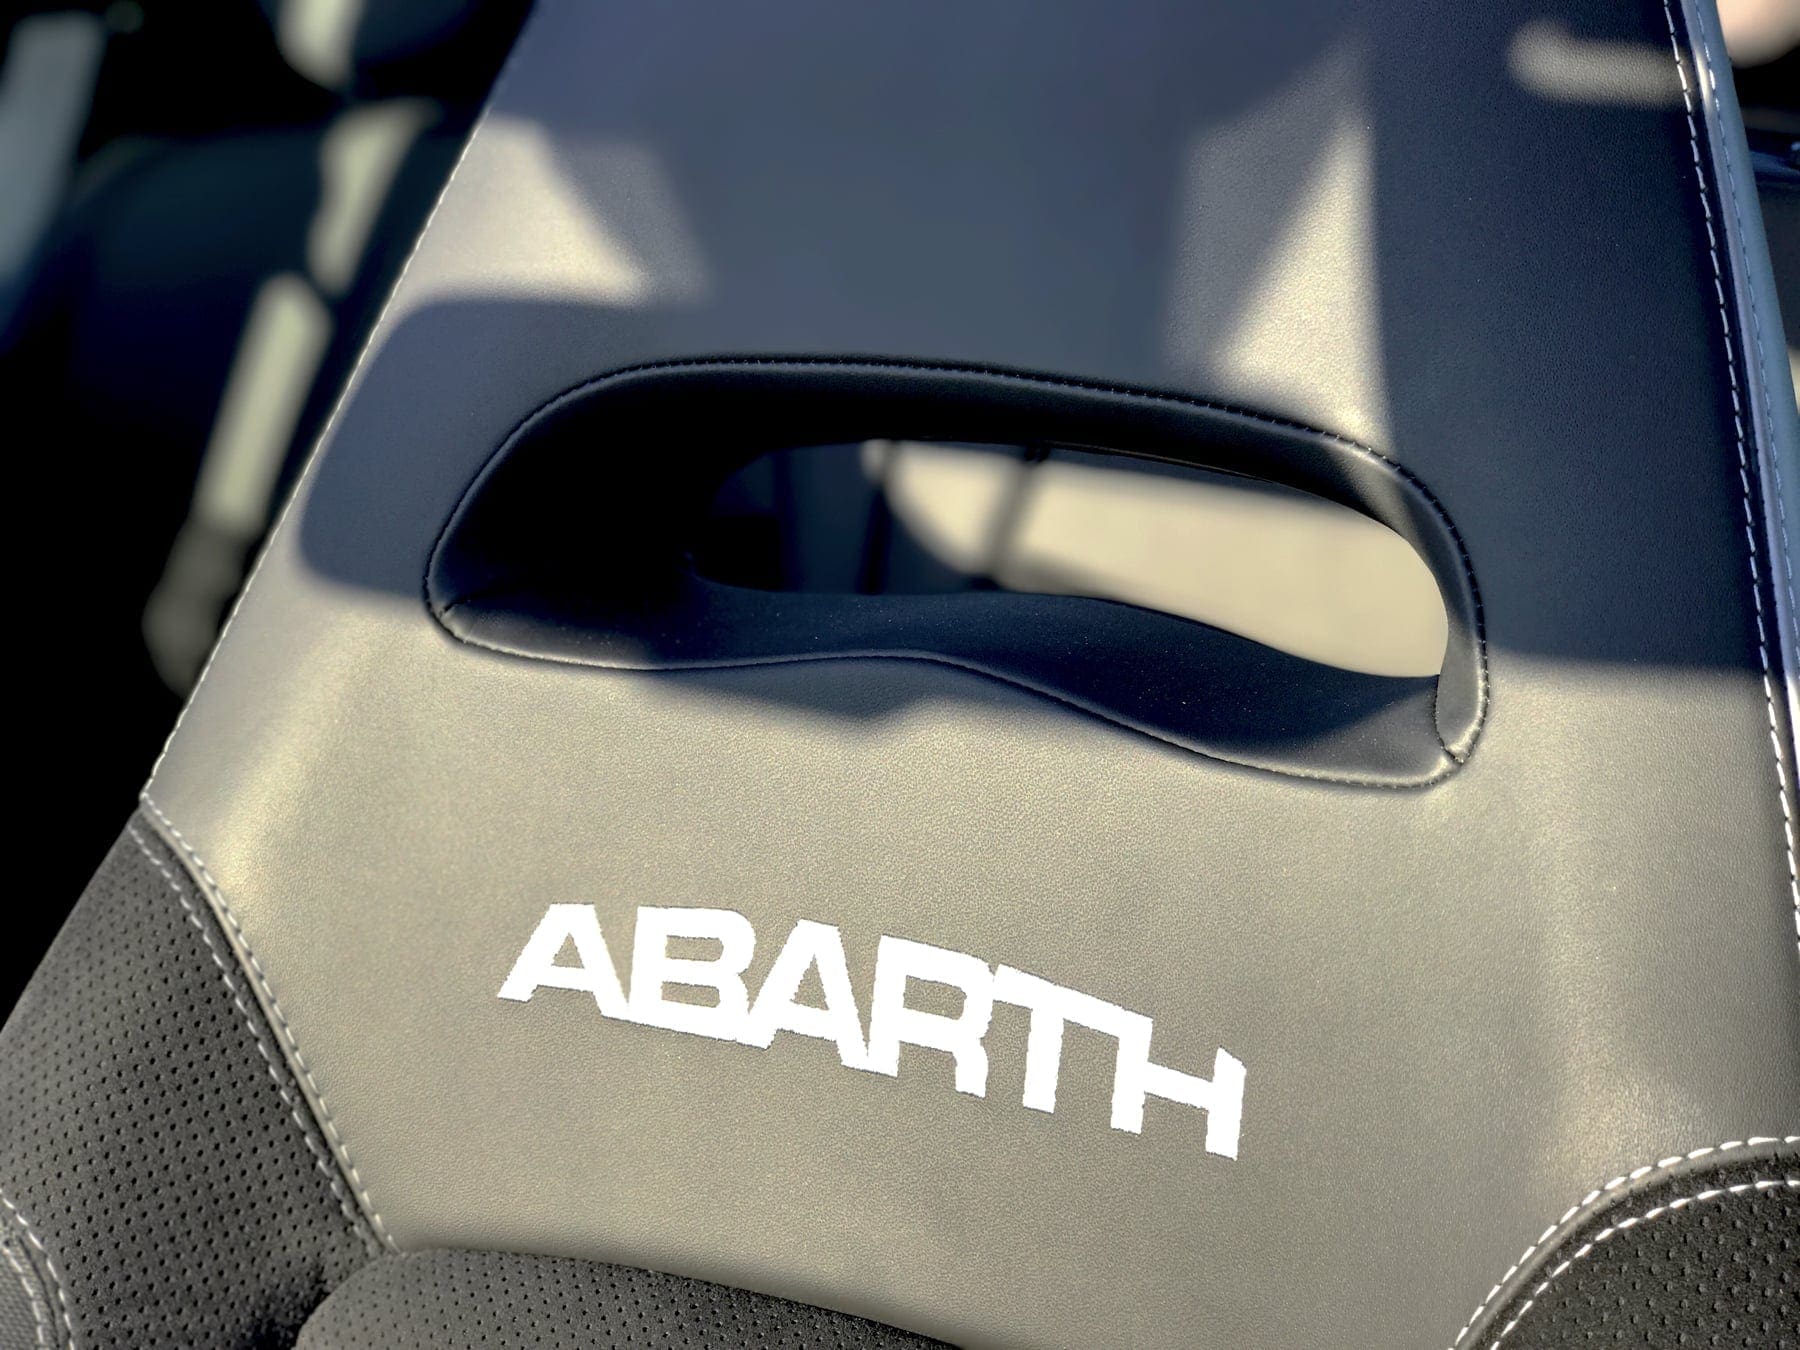 abarth 695 yamaha, Getest: de Abarth 695 Yamaha